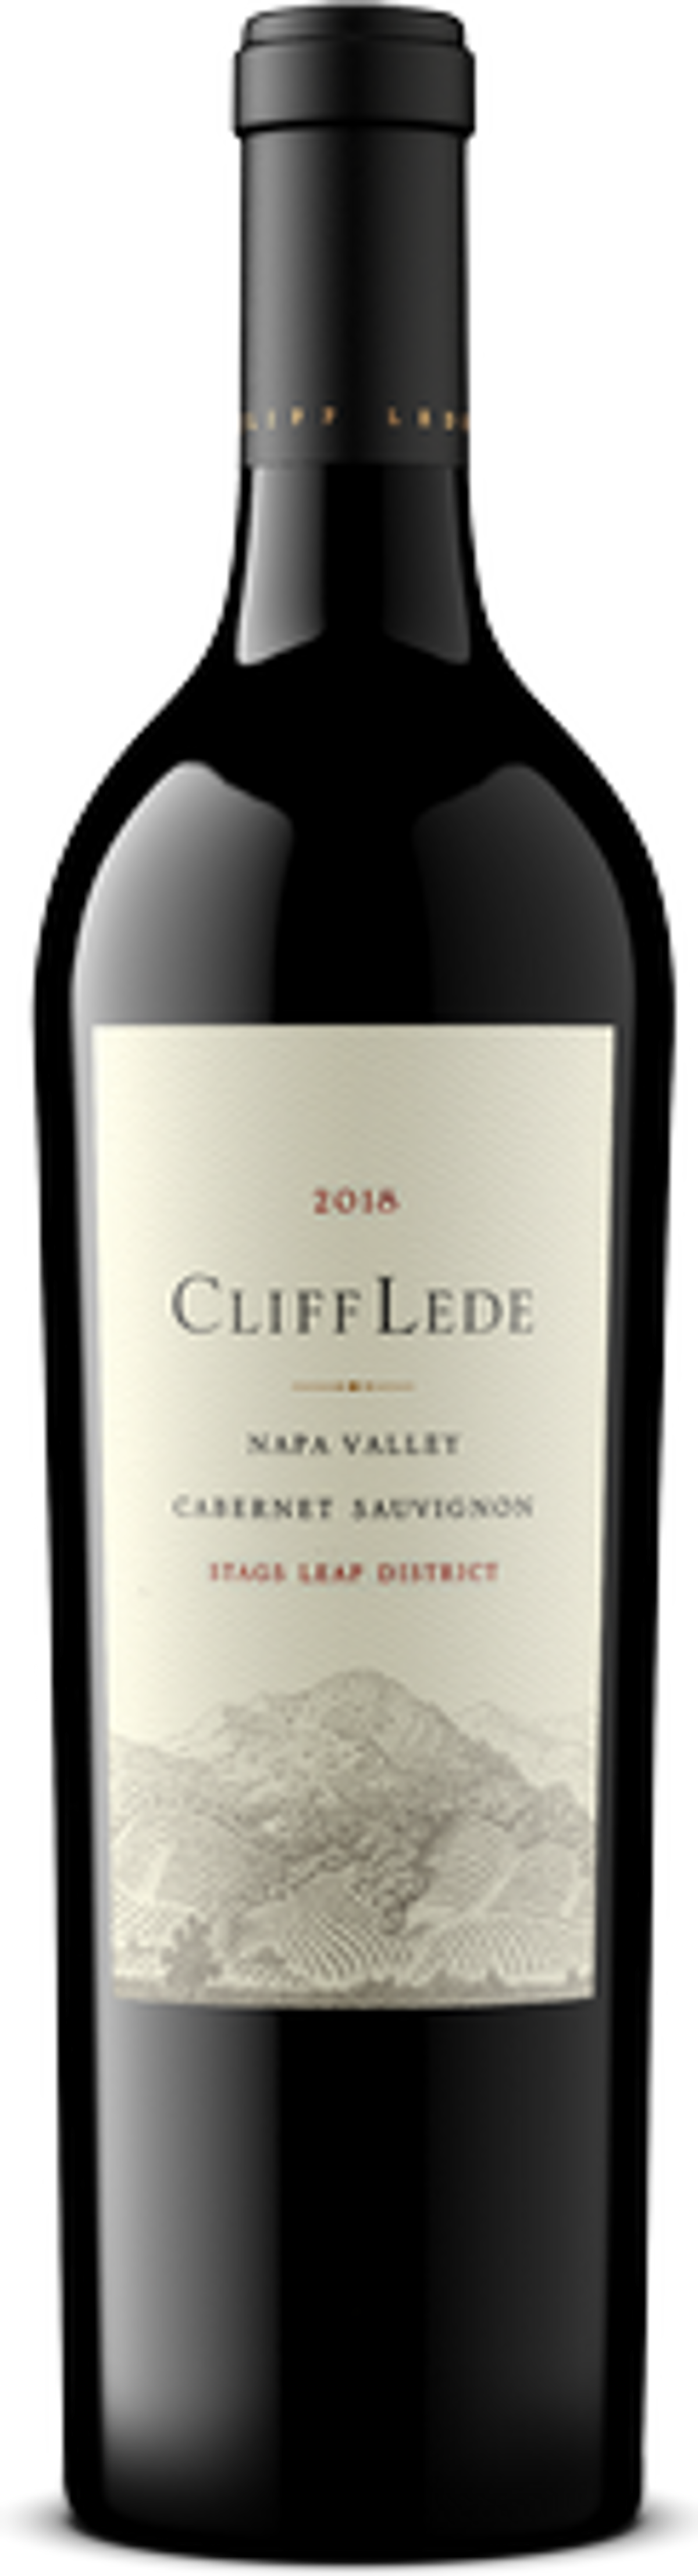 cliff lede vineyards wine